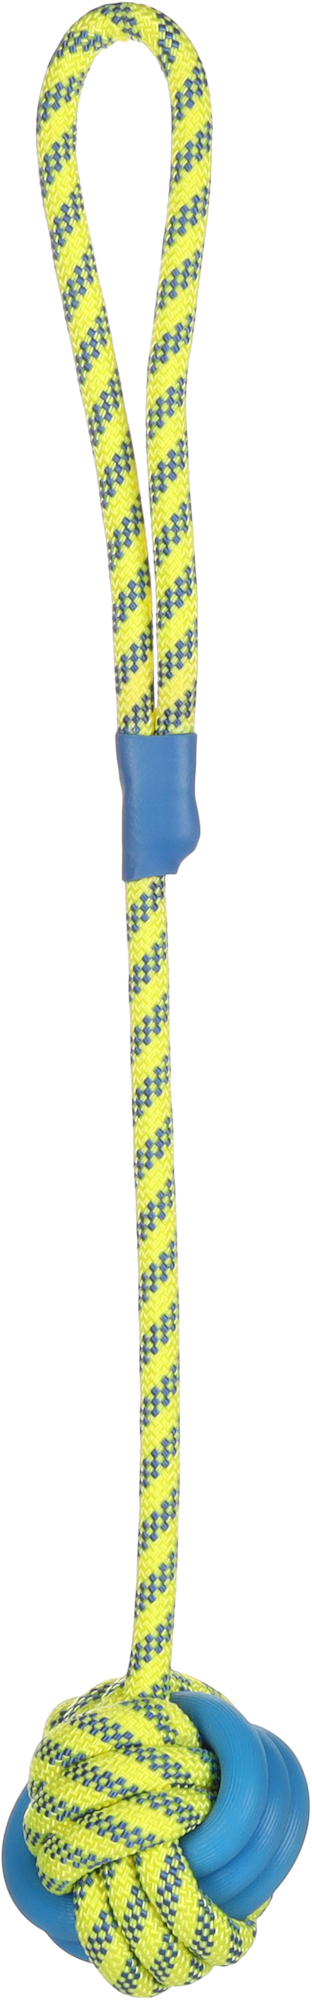 Tofla-Ball-Hundespielzeug + blau/gelbes Zugseil aus Gummi und widerstandsfähigem Nylon